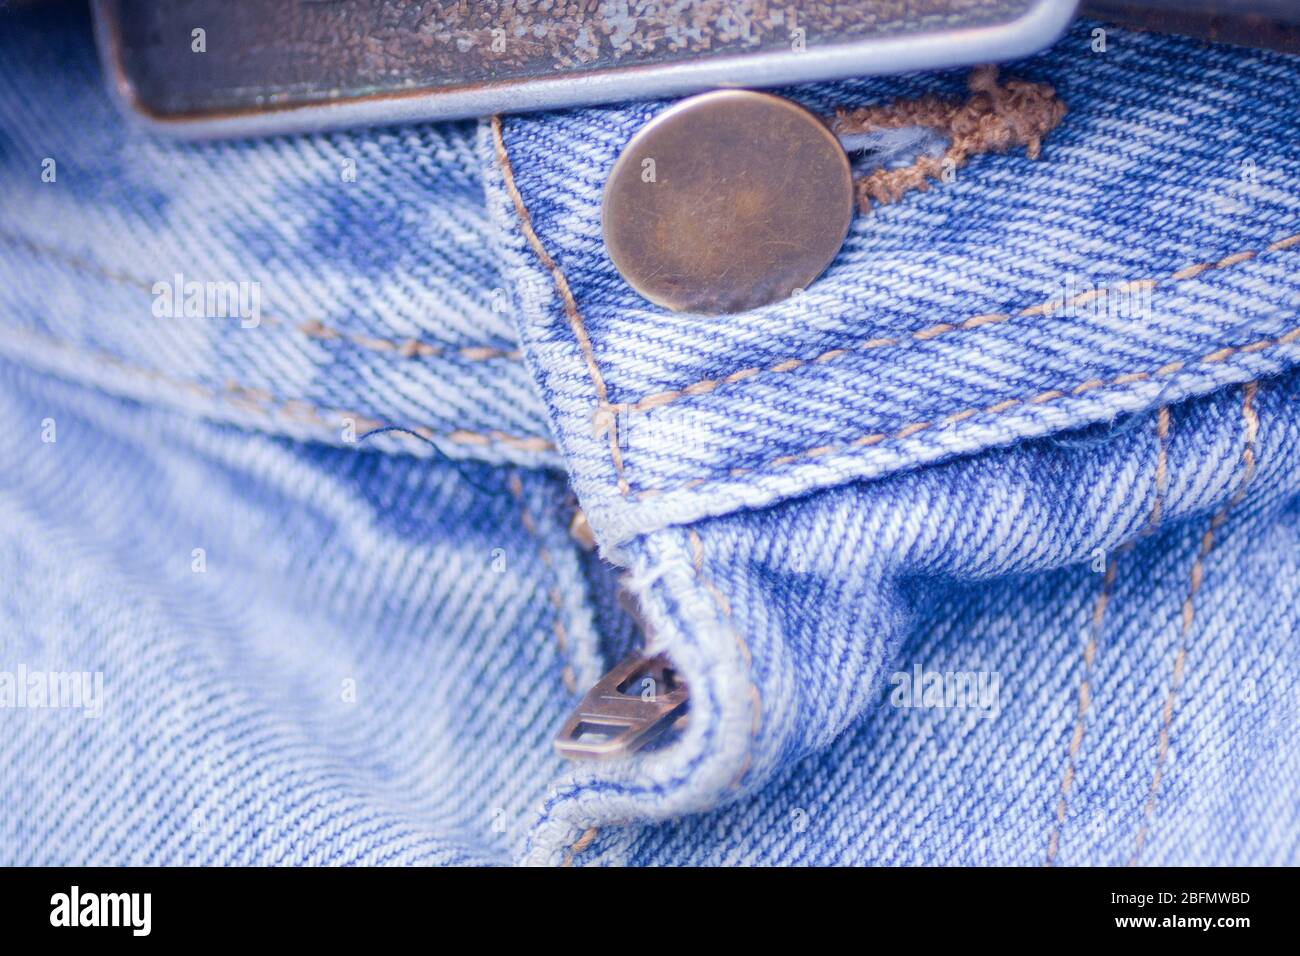 Schließen Sie eine Gürtelschnalle, Knopf und Reißverschluss der blauen Jeans. Makro-Ansicht von Knopf, Reißverschluss und Textur von verblichenem blauen Denim-Stoff. Stockfoto